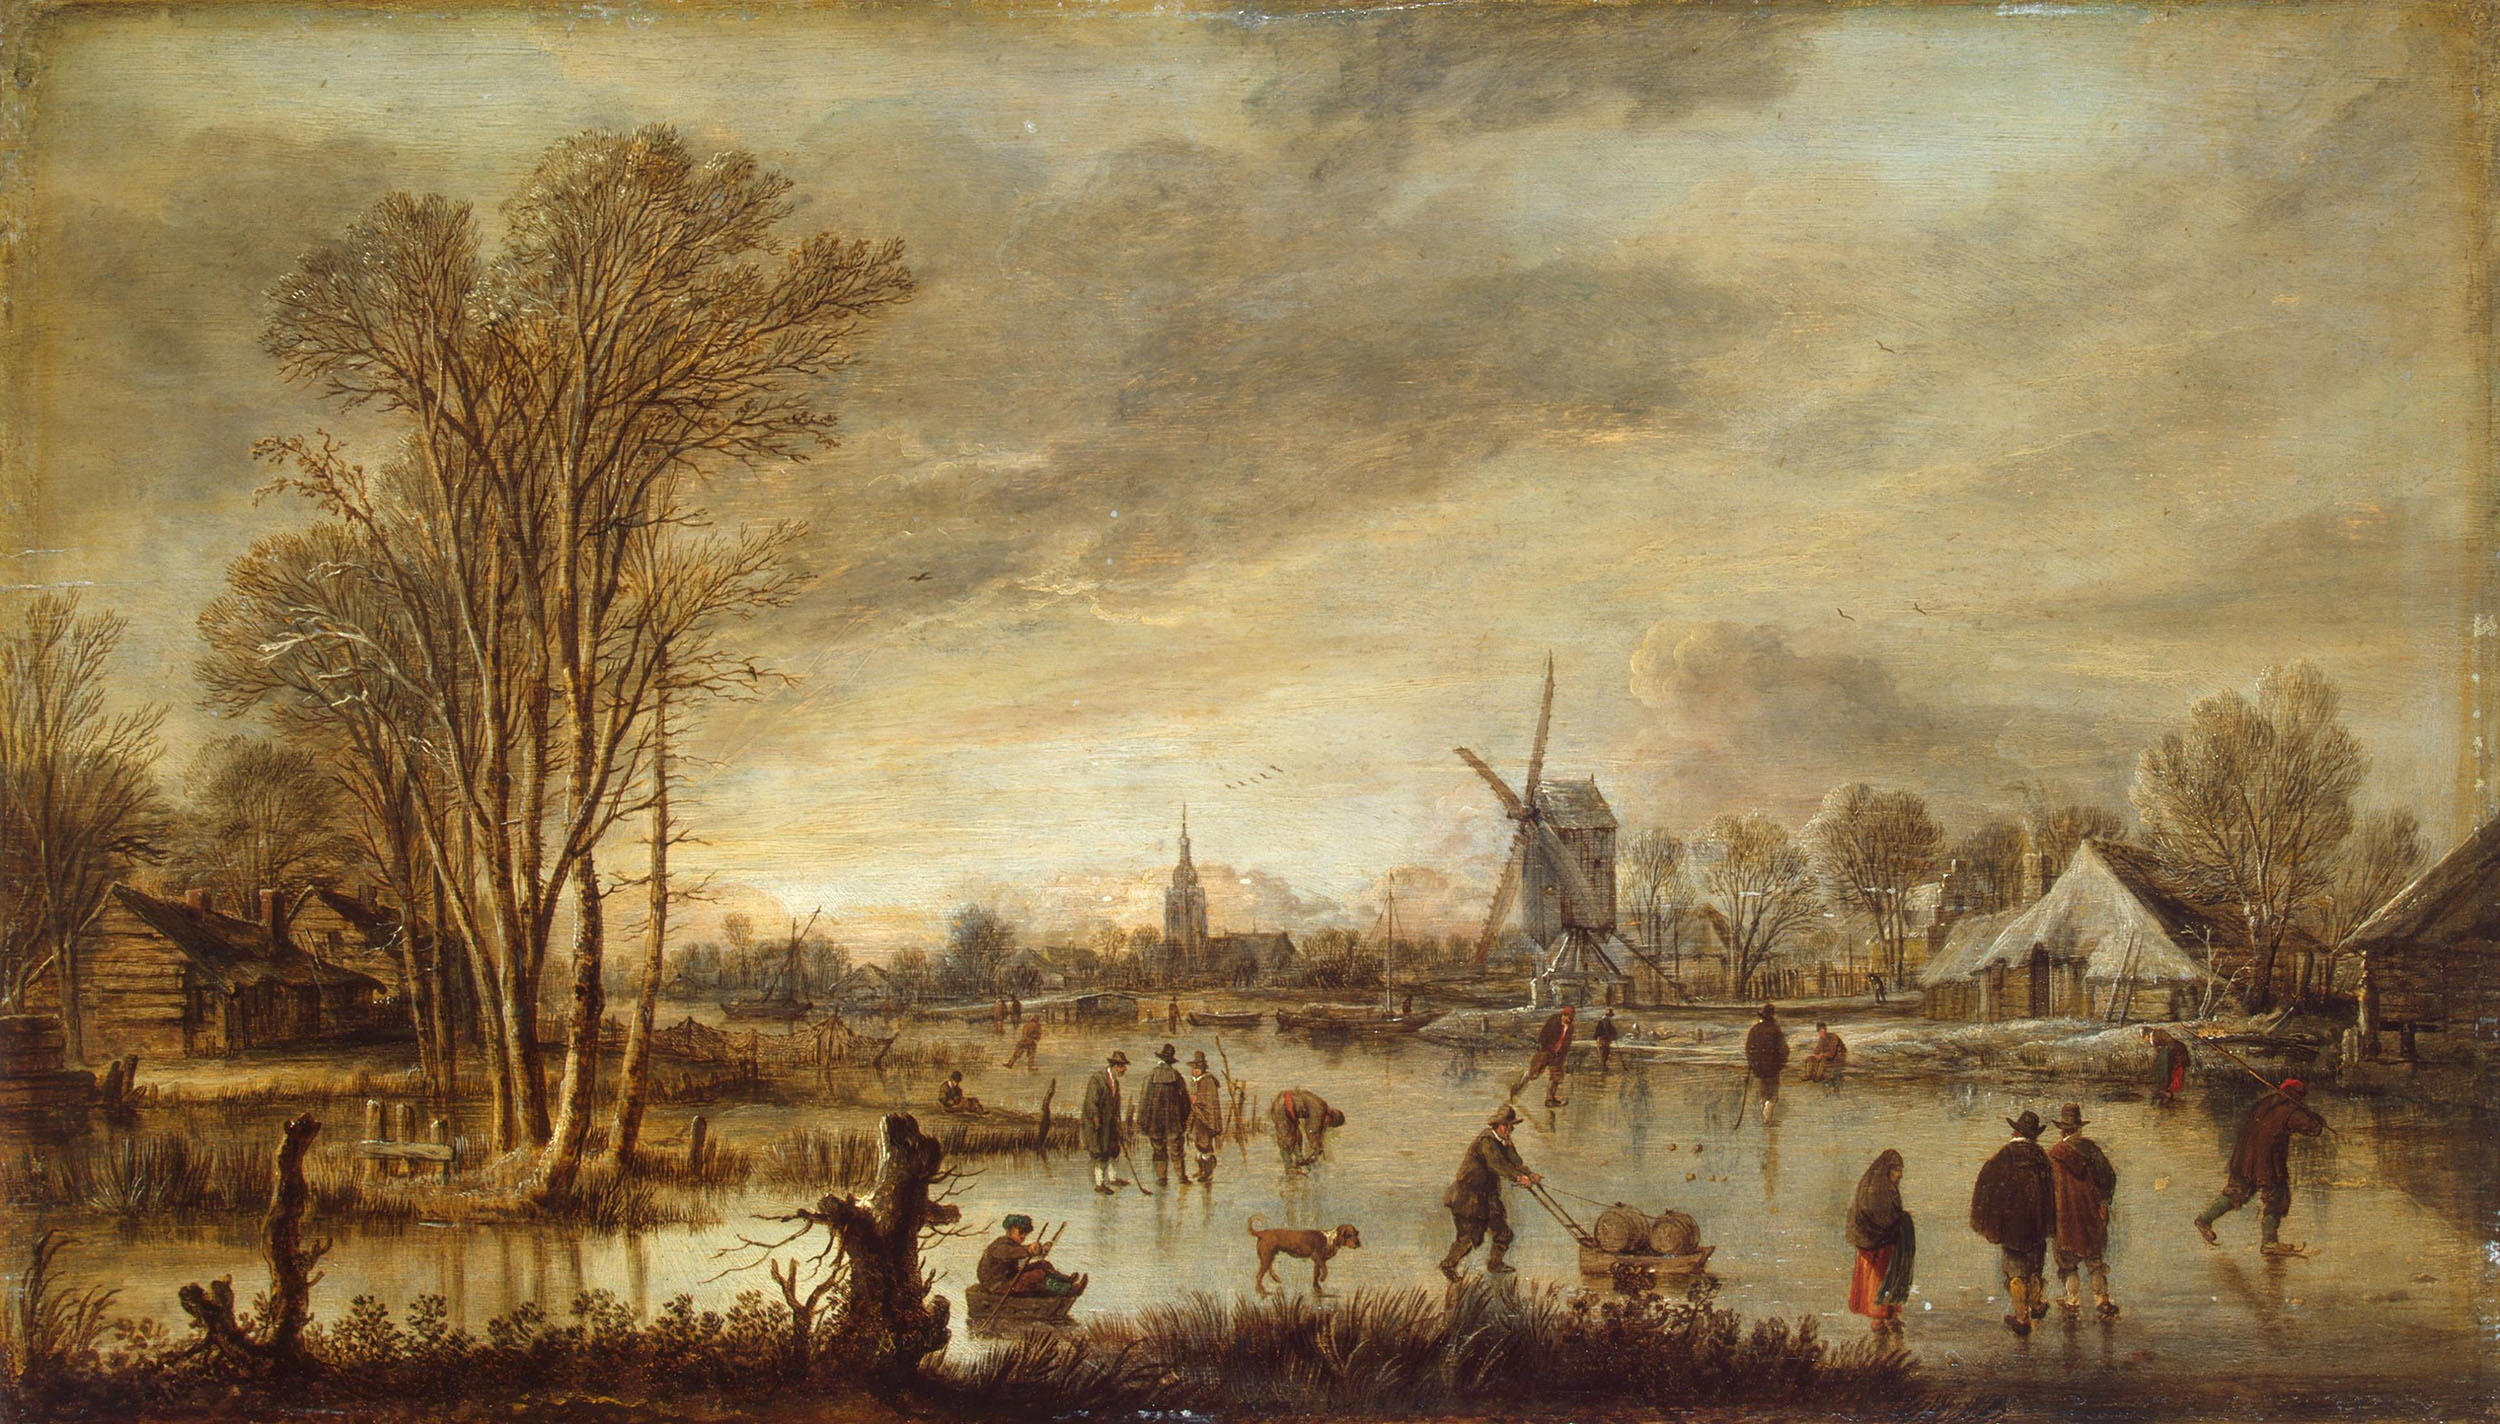 Арт ван дер Нер. "Зимний вид на реке". Около 1645. Эрмитаж, Санкт-Петербург.